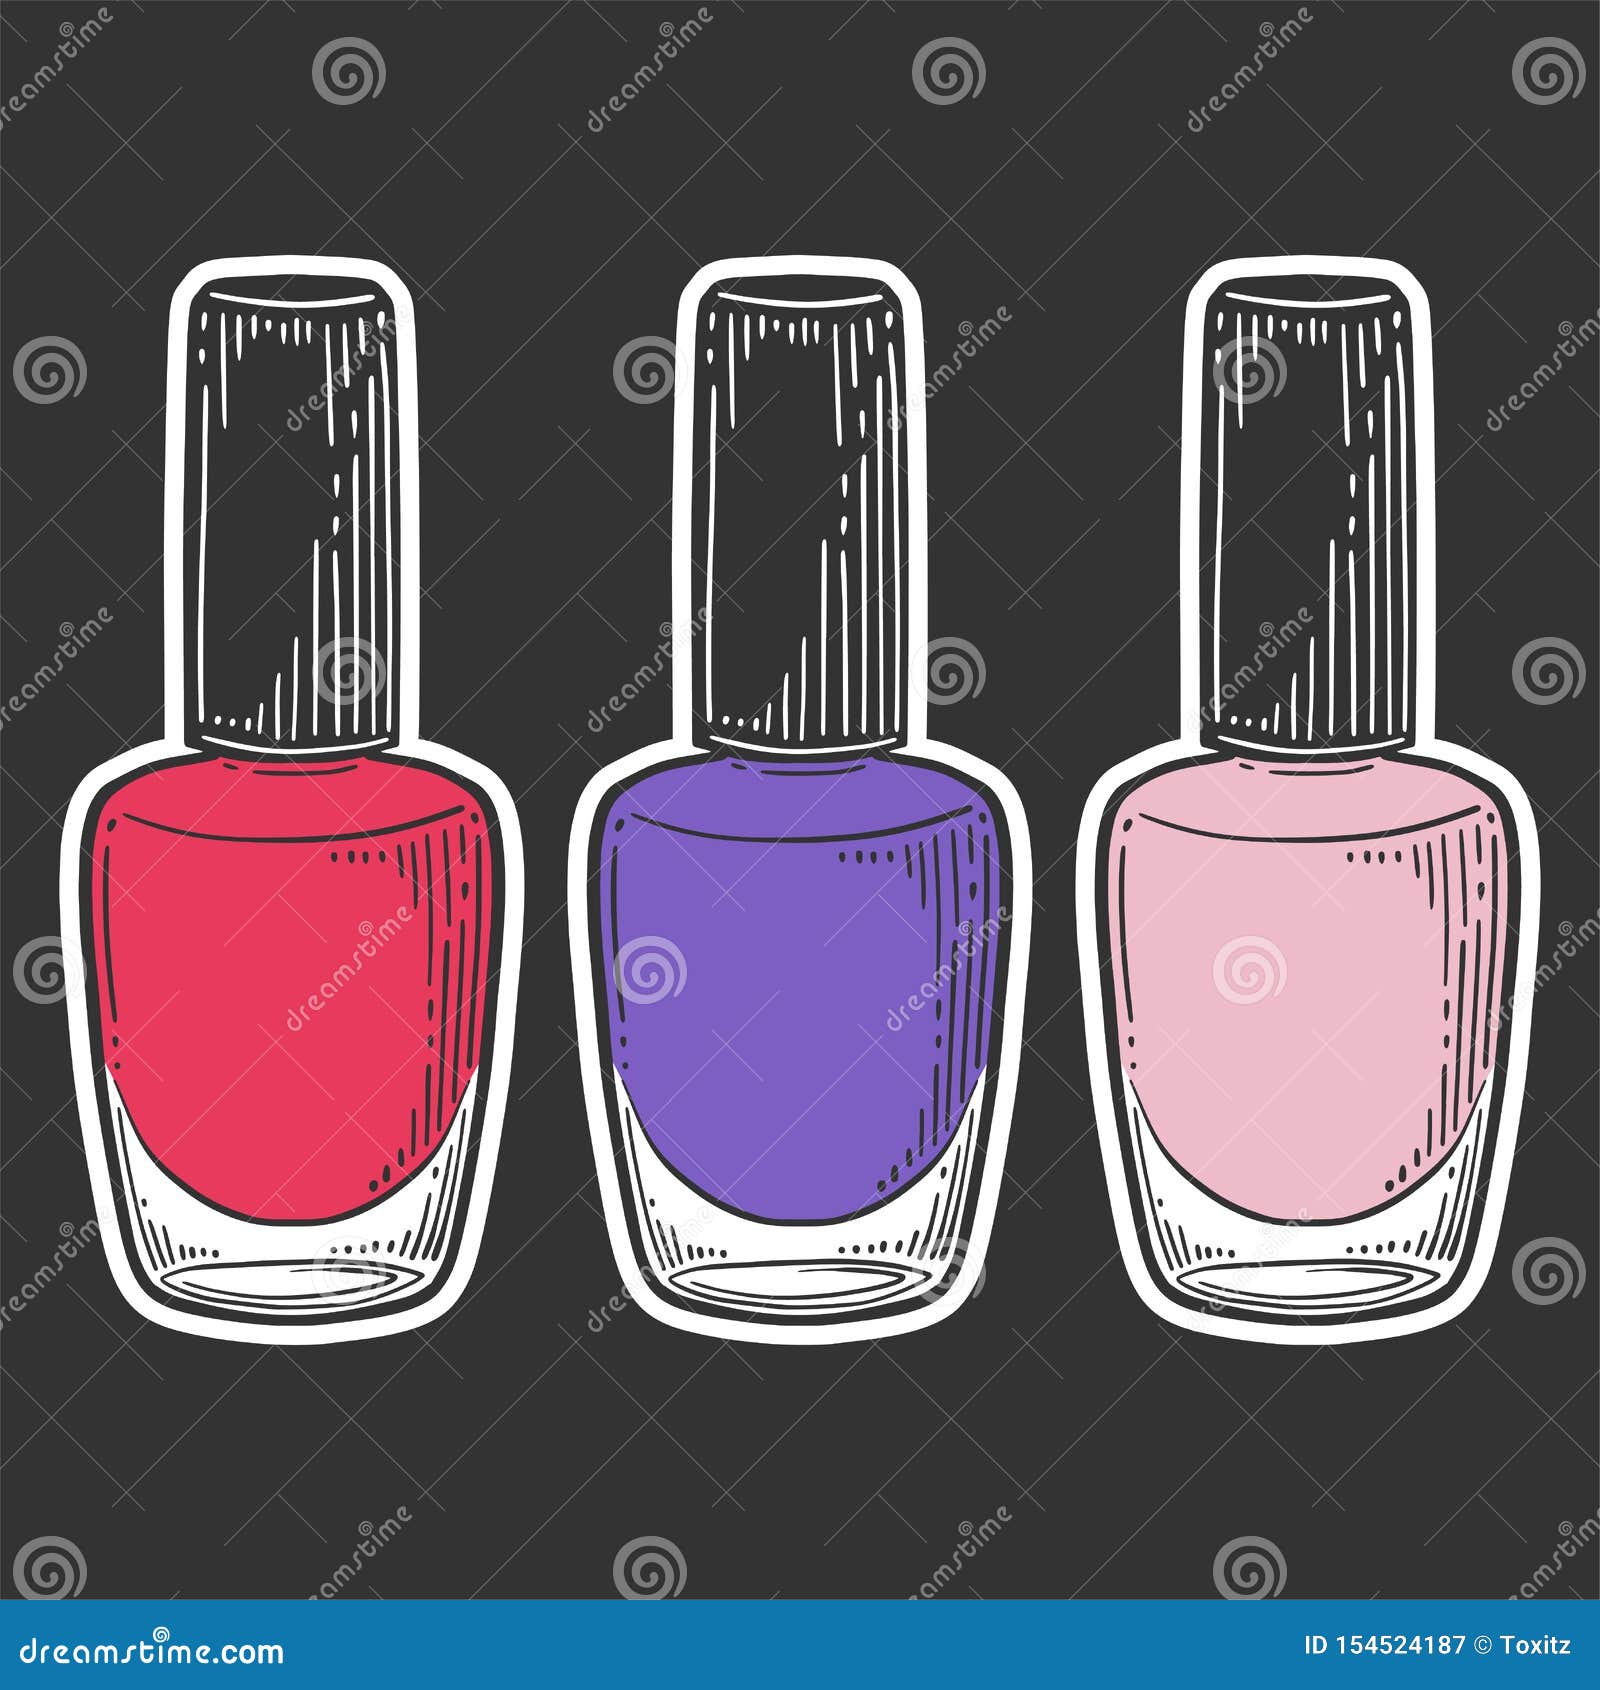 Sketch nail varnish image Hand drawn nail polish bottle Fashion  stock  vector 2584906  Crushpixel